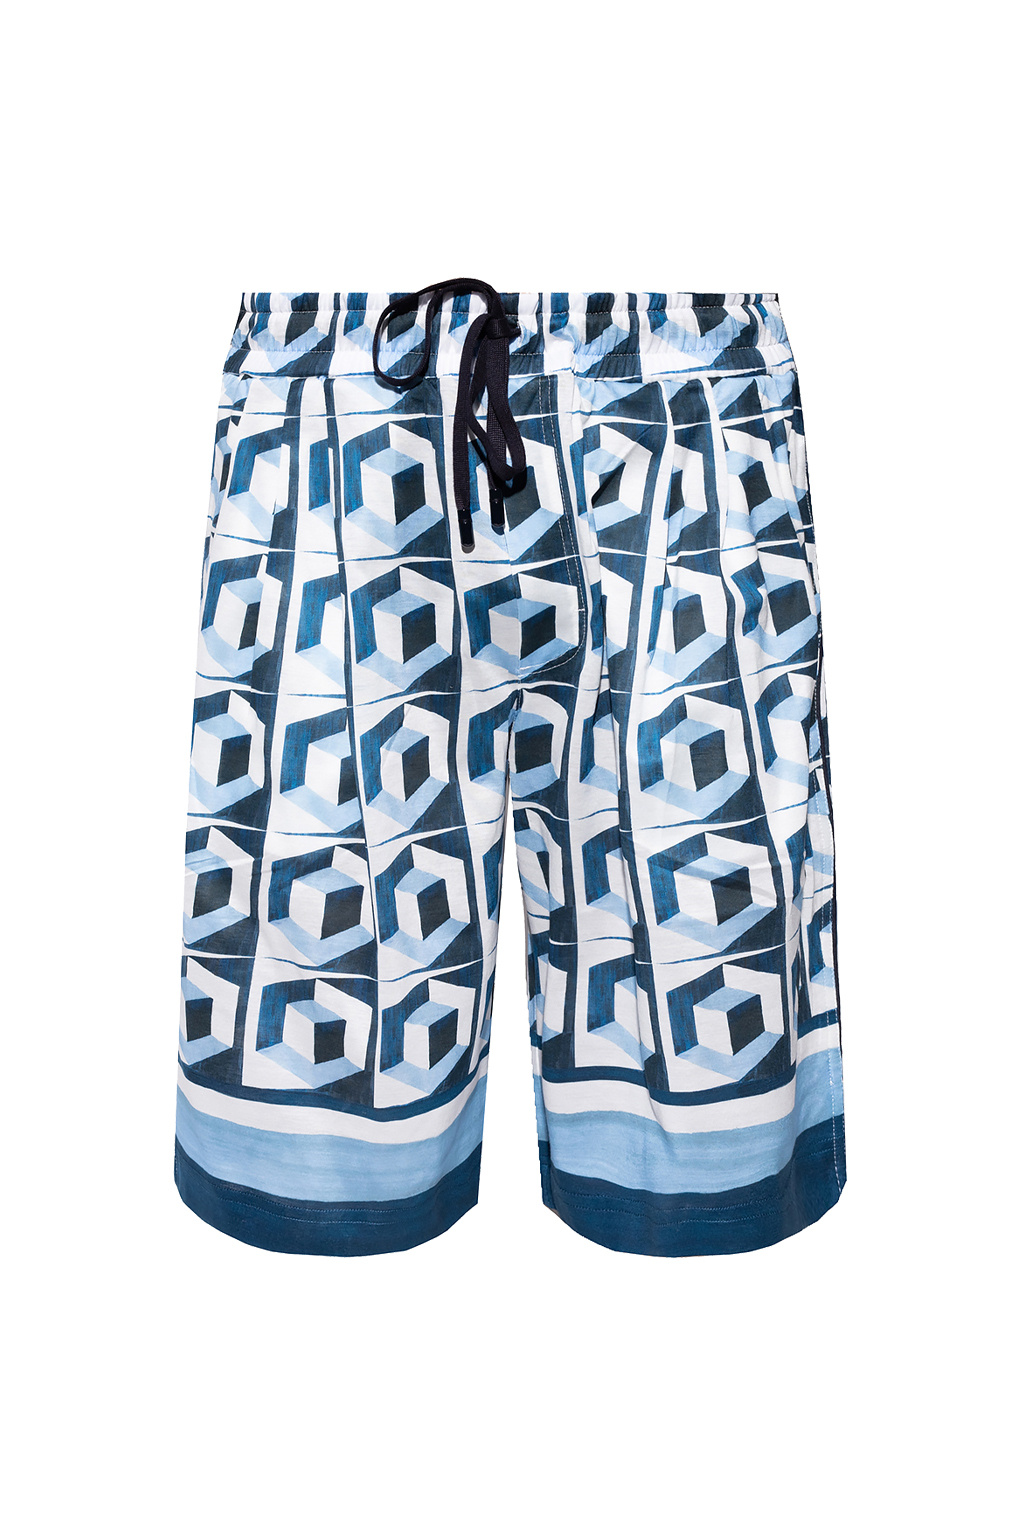 Dolce & Gabbana Patterned shorts